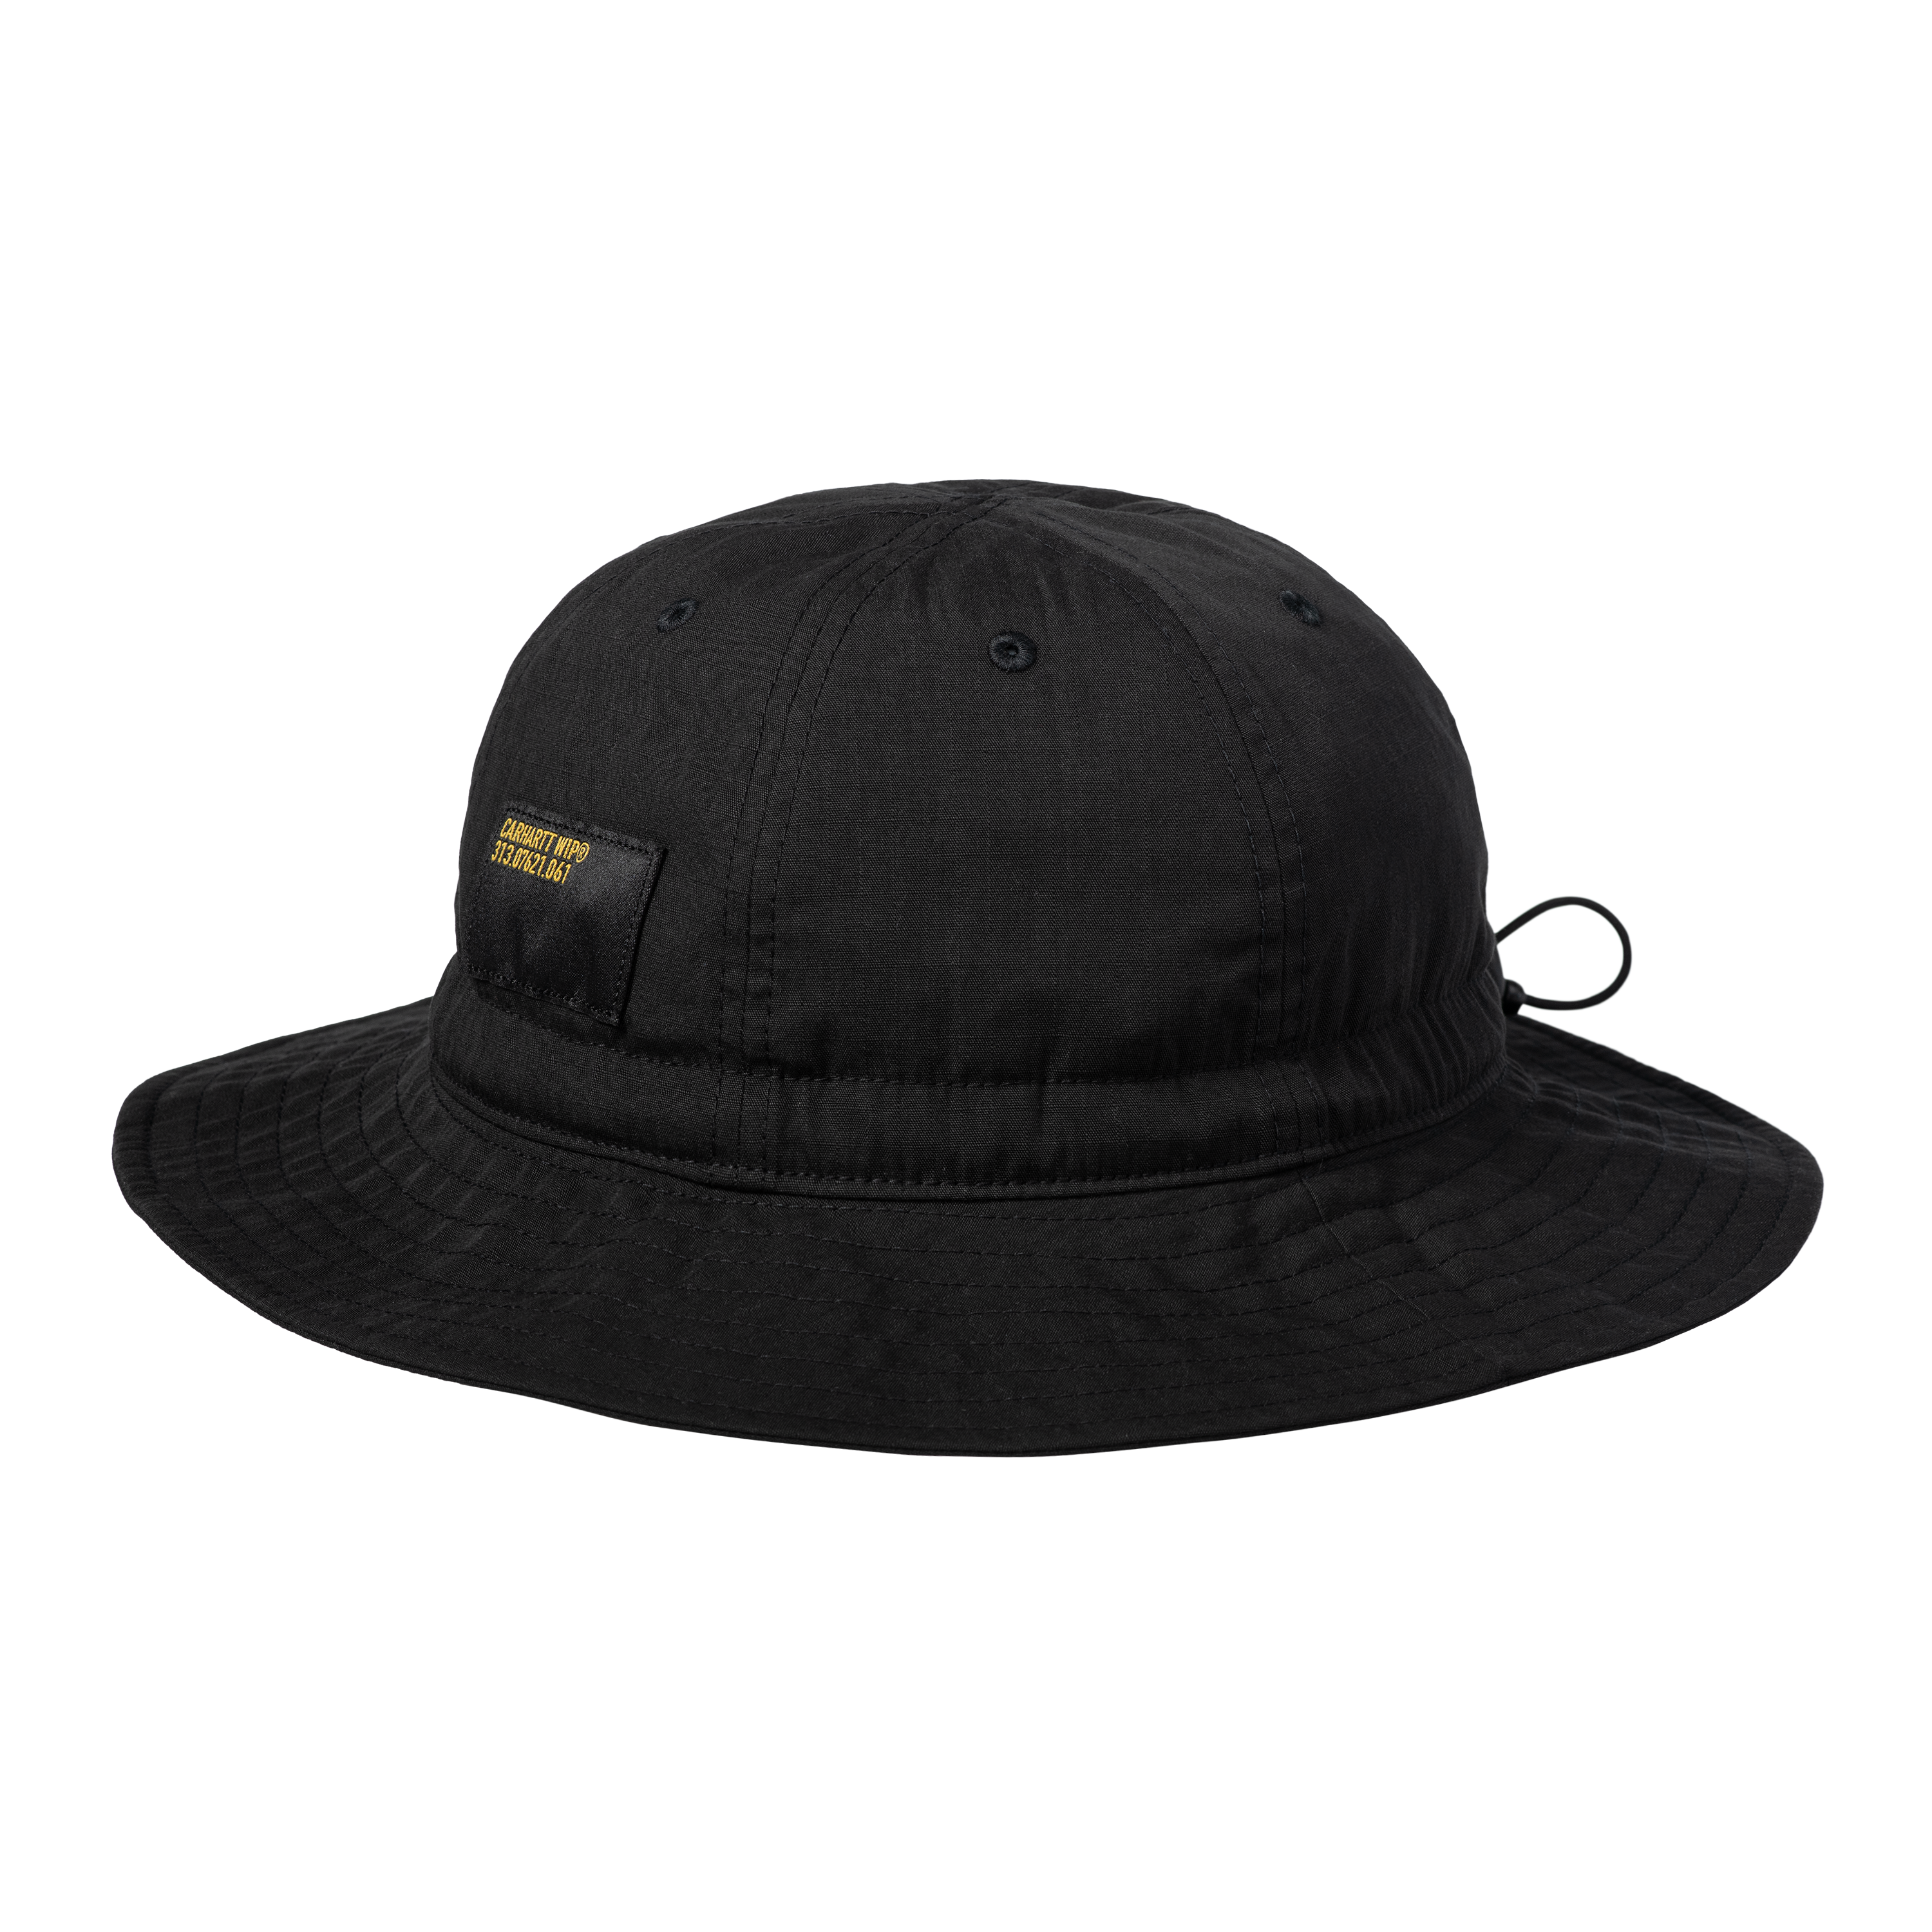 Carhartt WIP Haste Bucket Hat en Negro